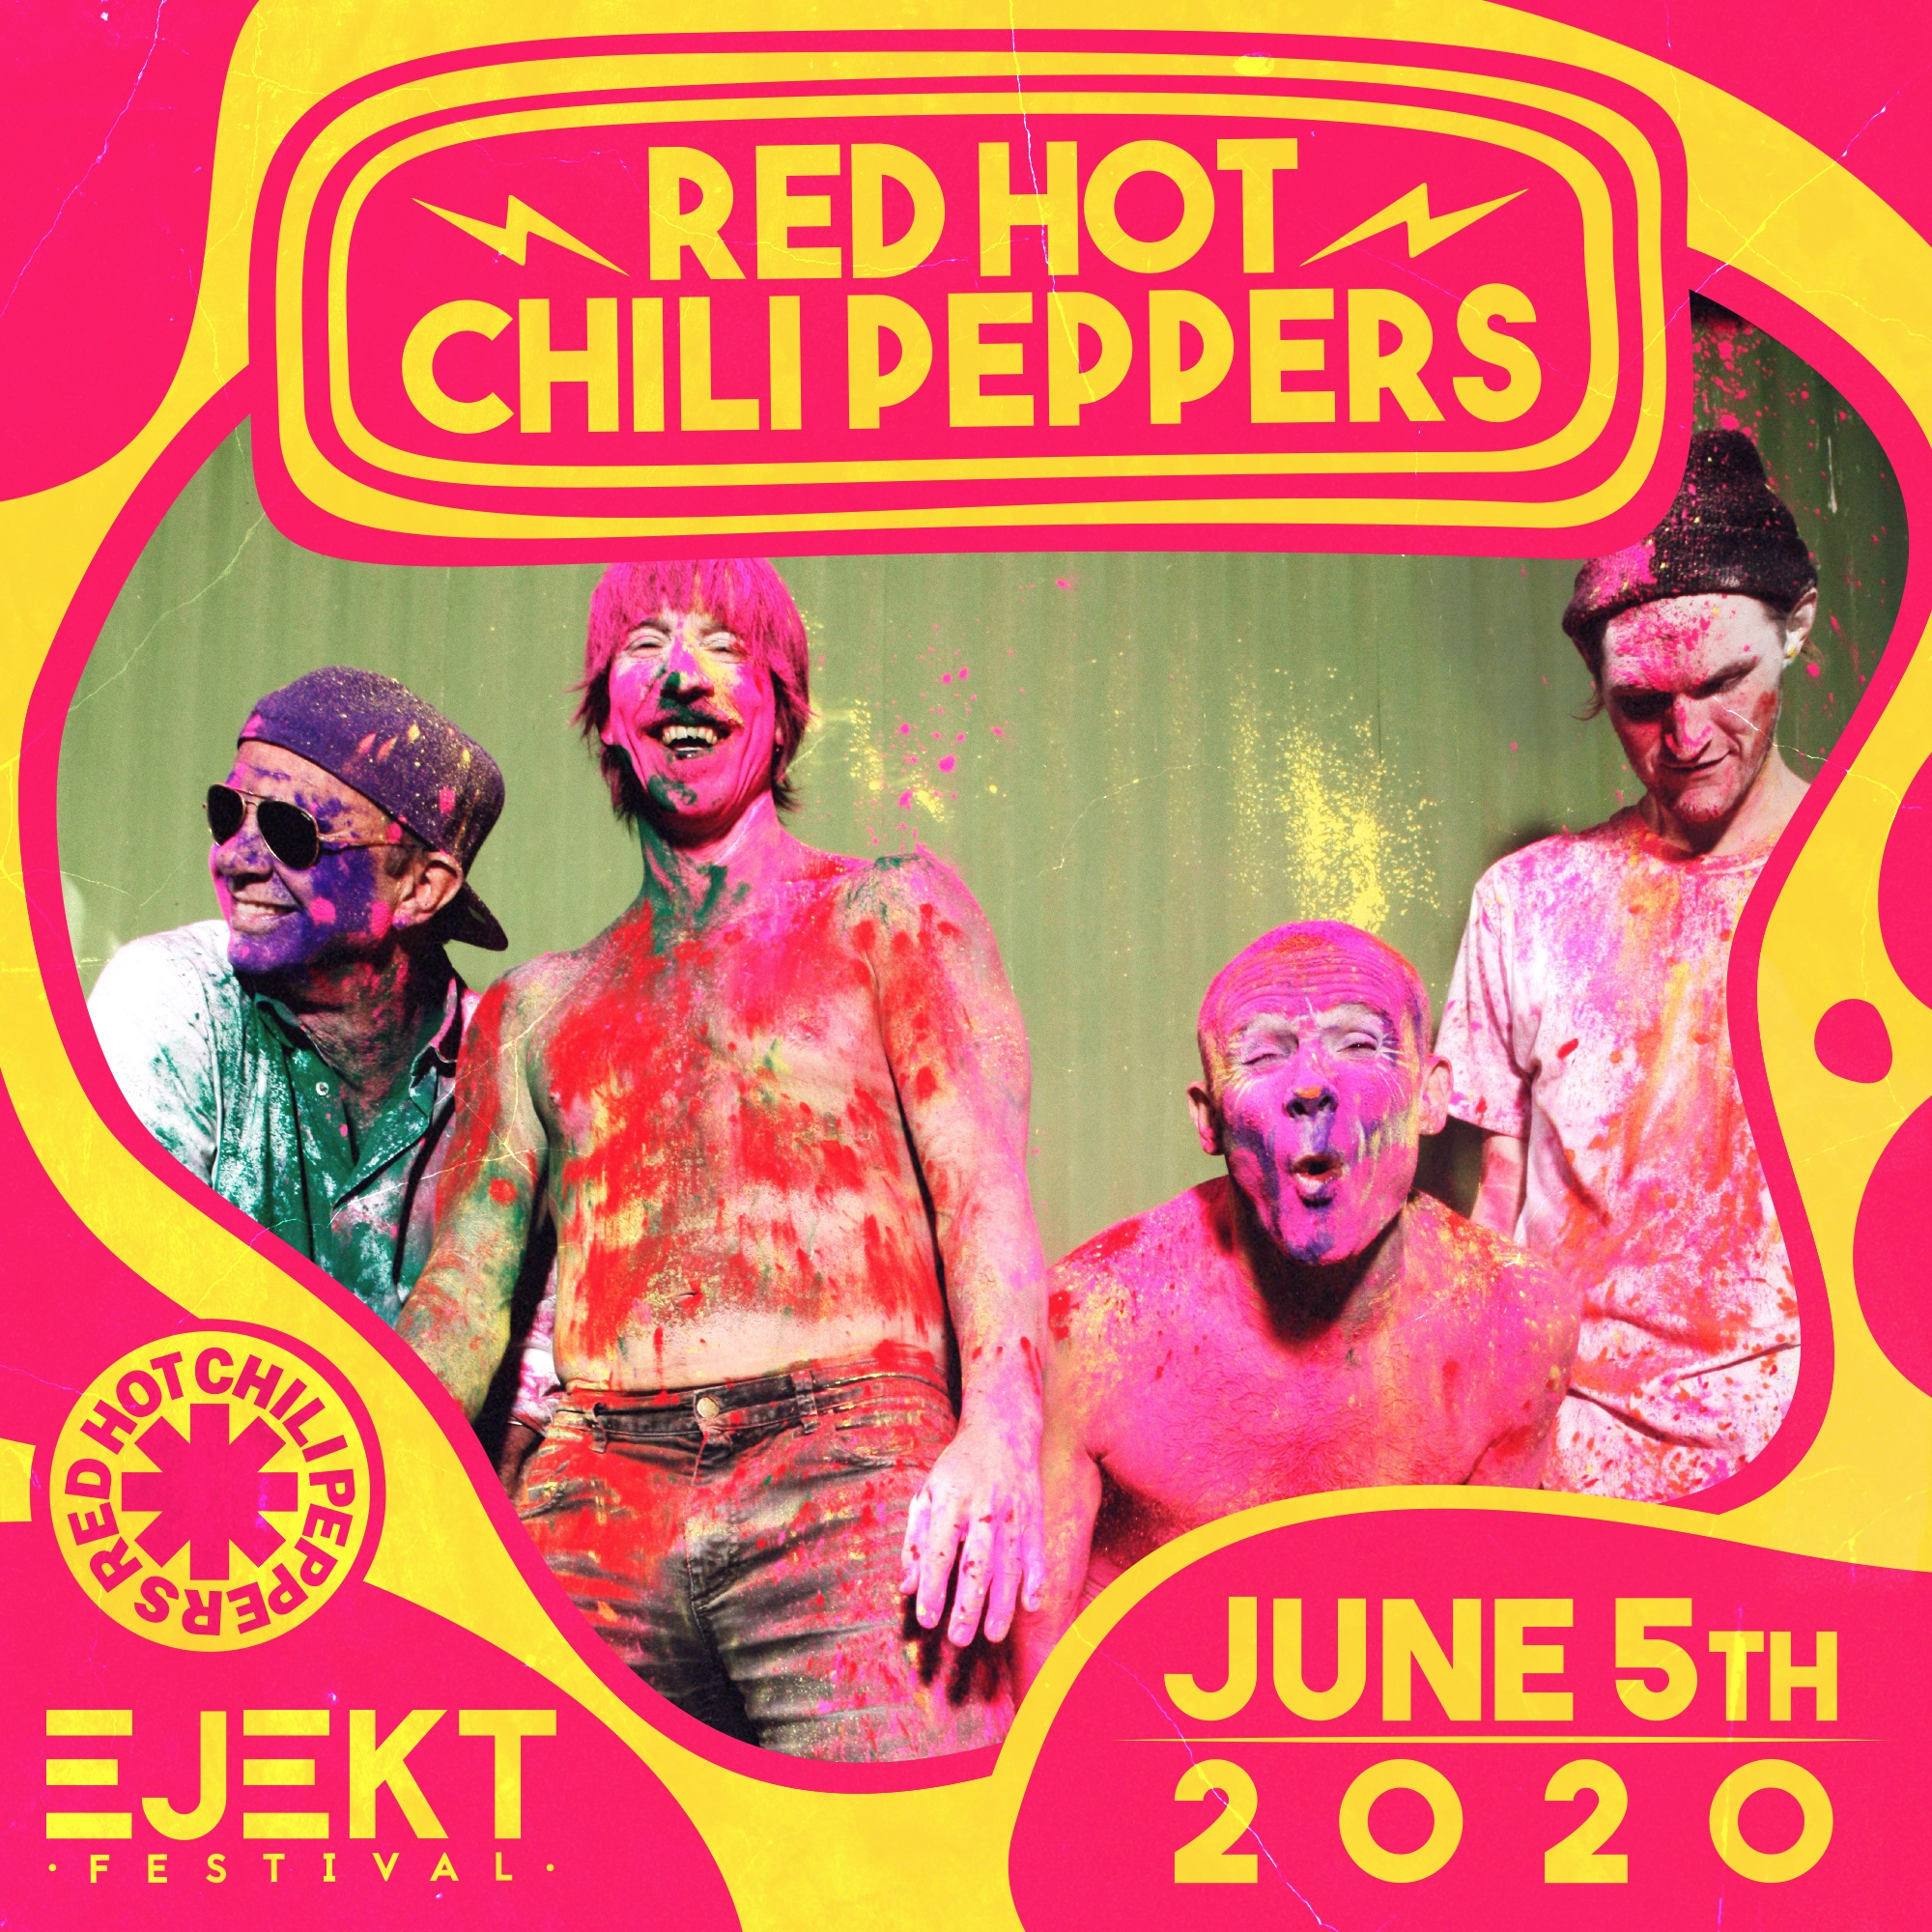 EJEKT Festival 2020: Αρχίζει αύριο η προπώληση για Red Hot Chili Peppers